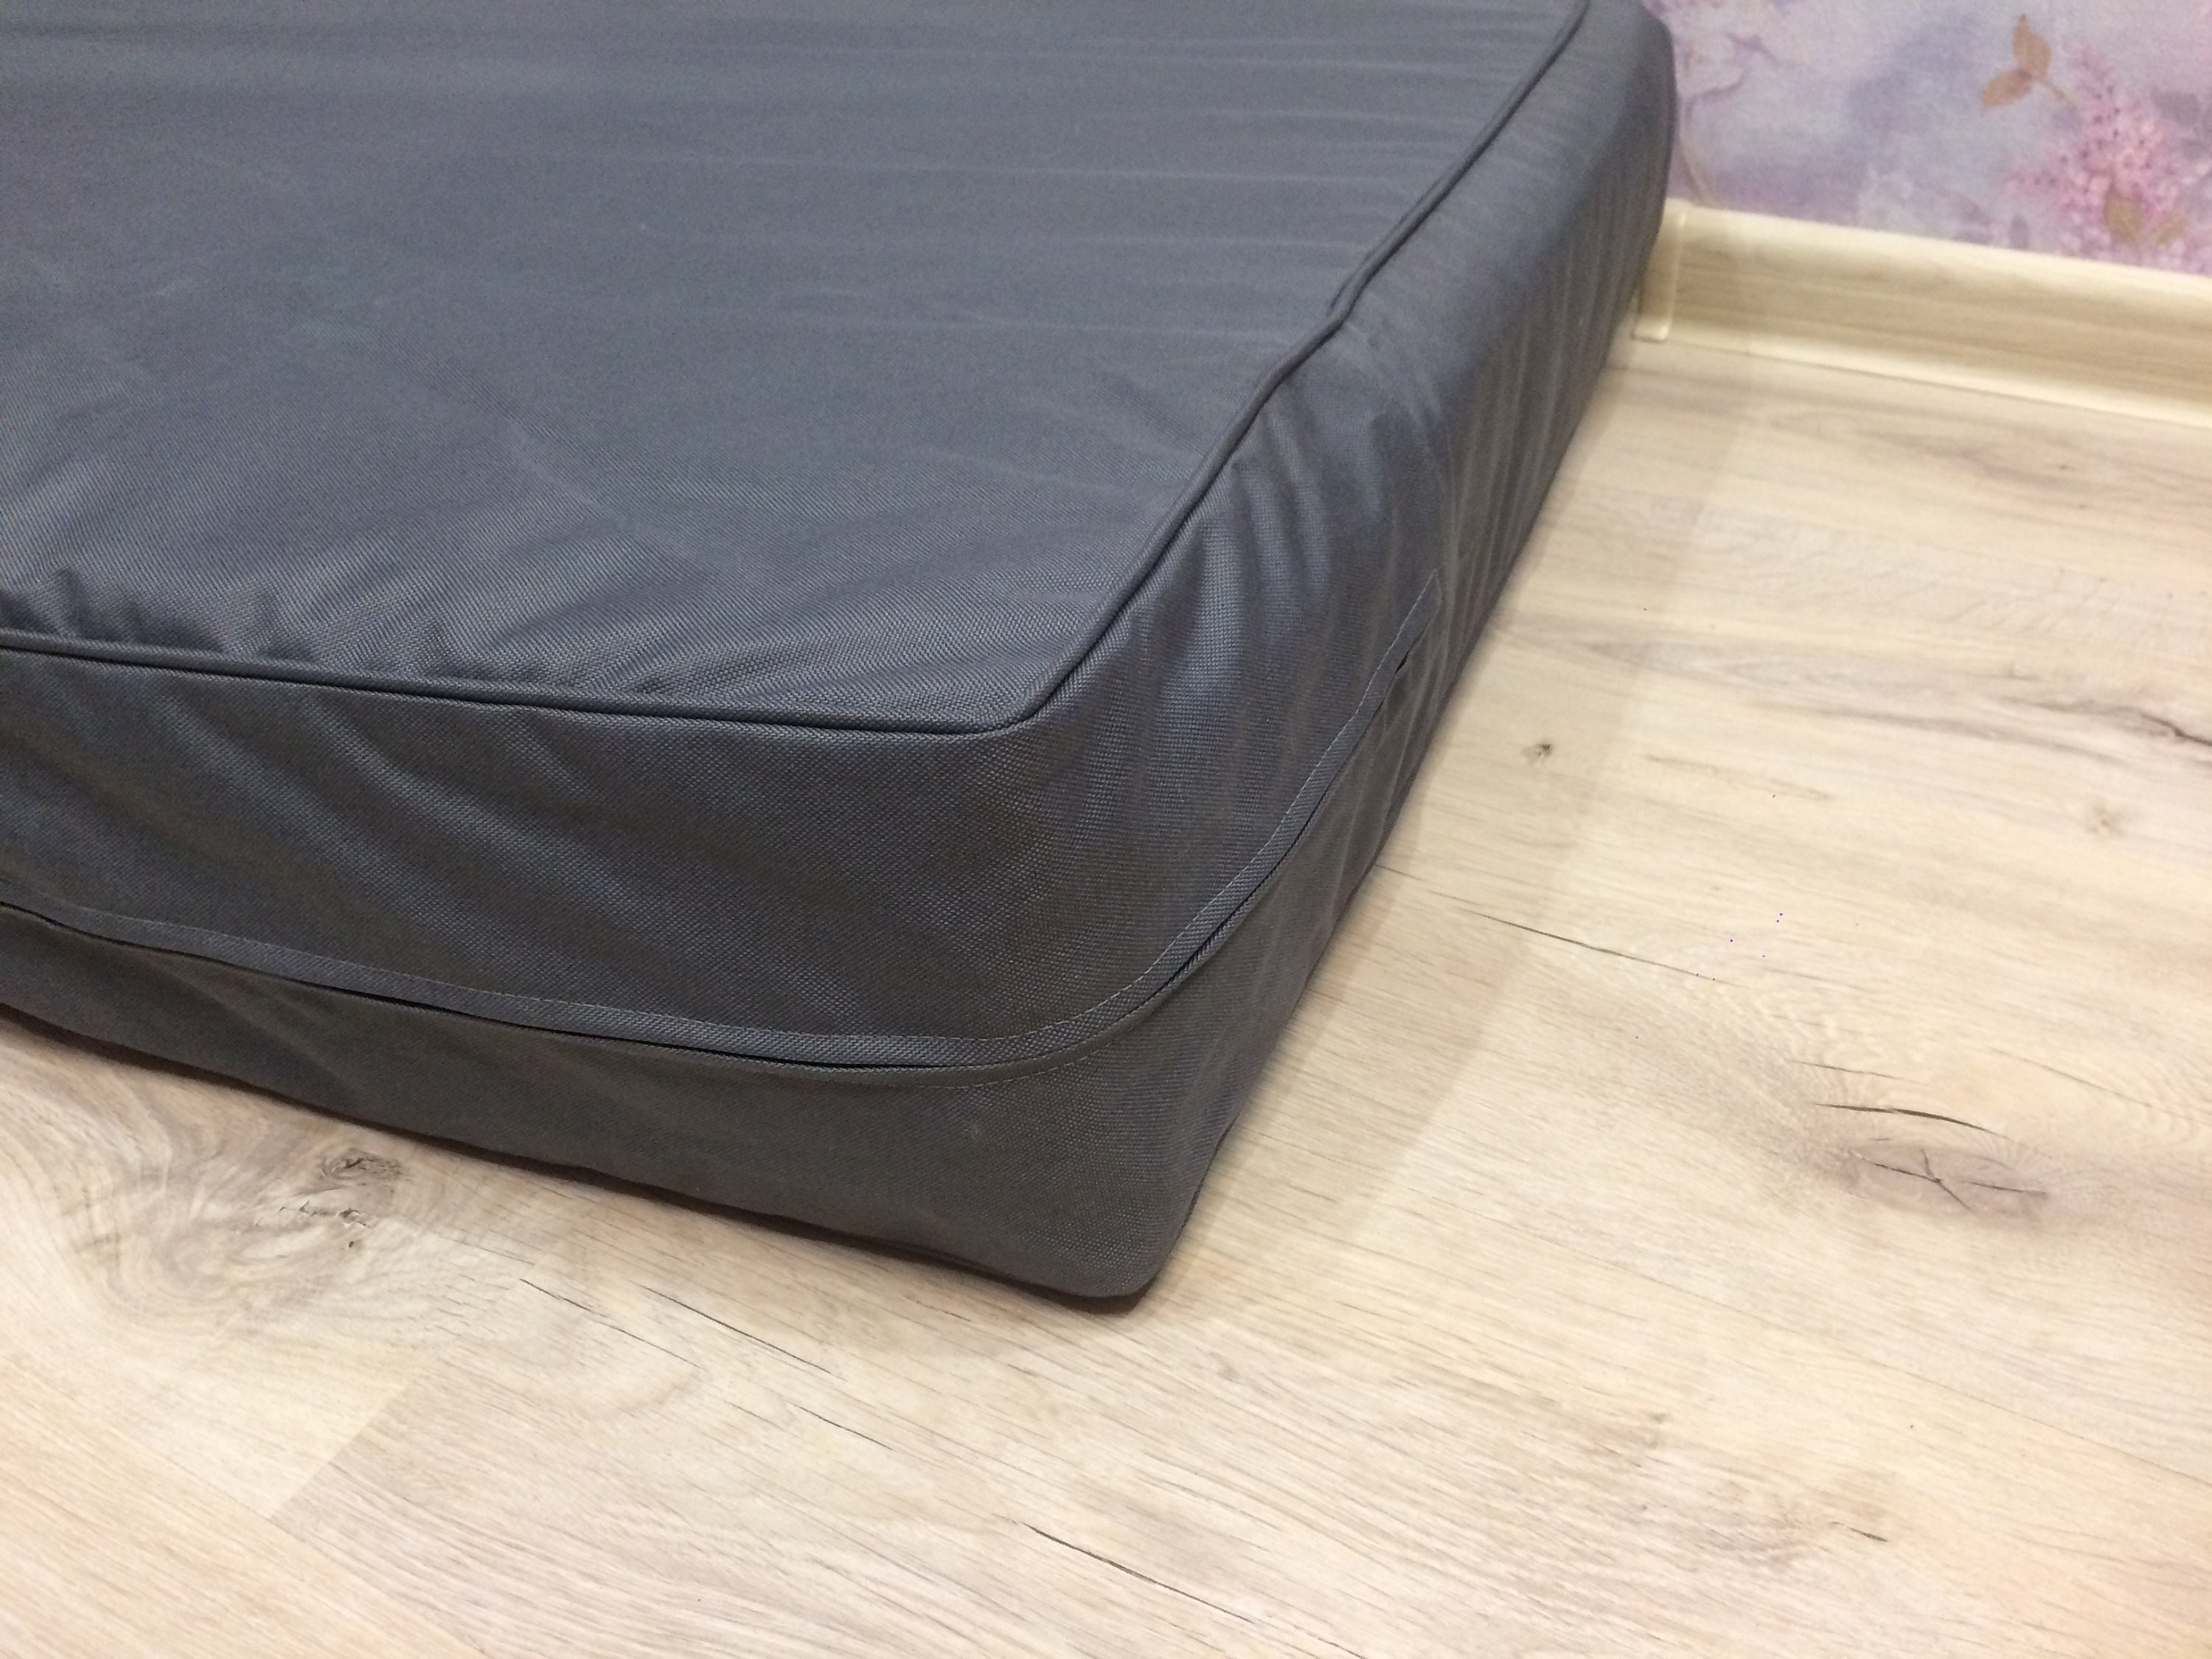 waterproof mattress cover for 5 inch mattress